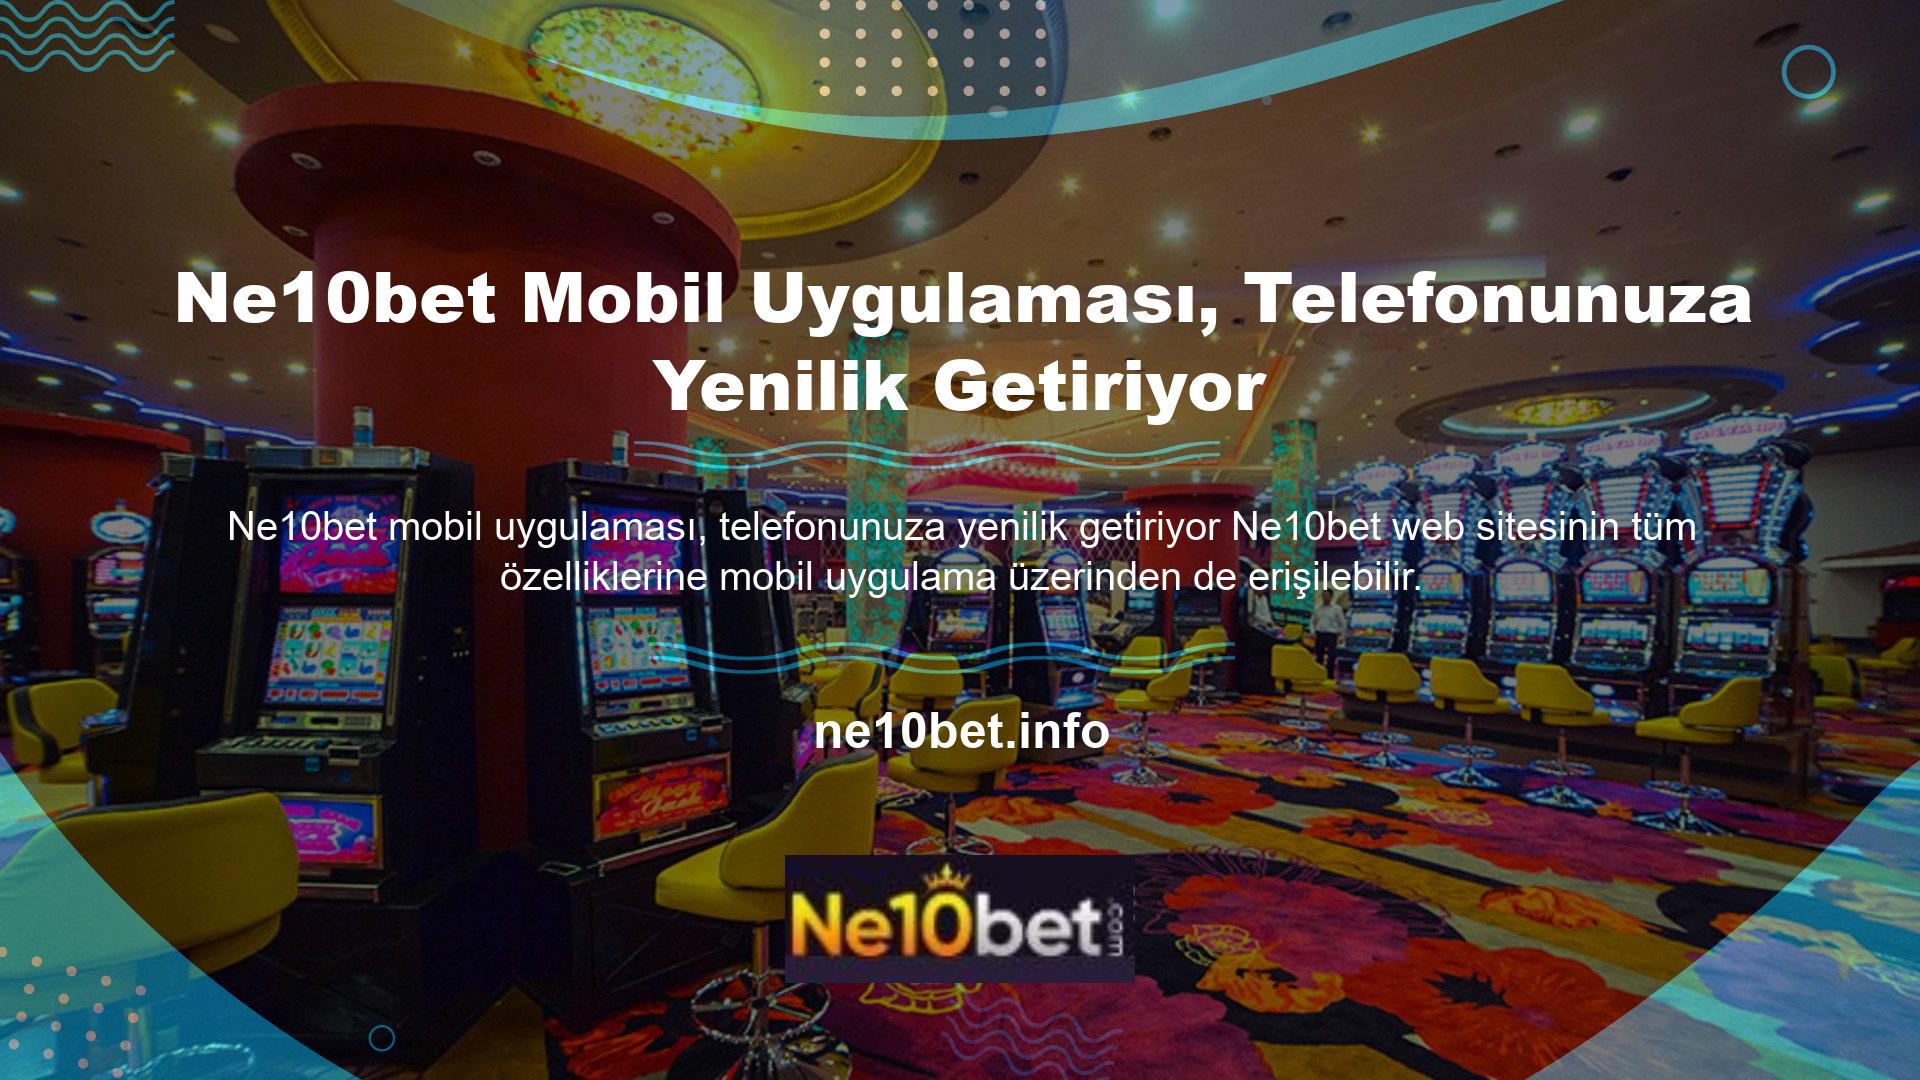 Ne10bet TV'nin özellikleri genellikle mobil uygulama aracılığıyla sorunsuz bir şekilde erişilebilen Ne10bet web sitesinde bulunur